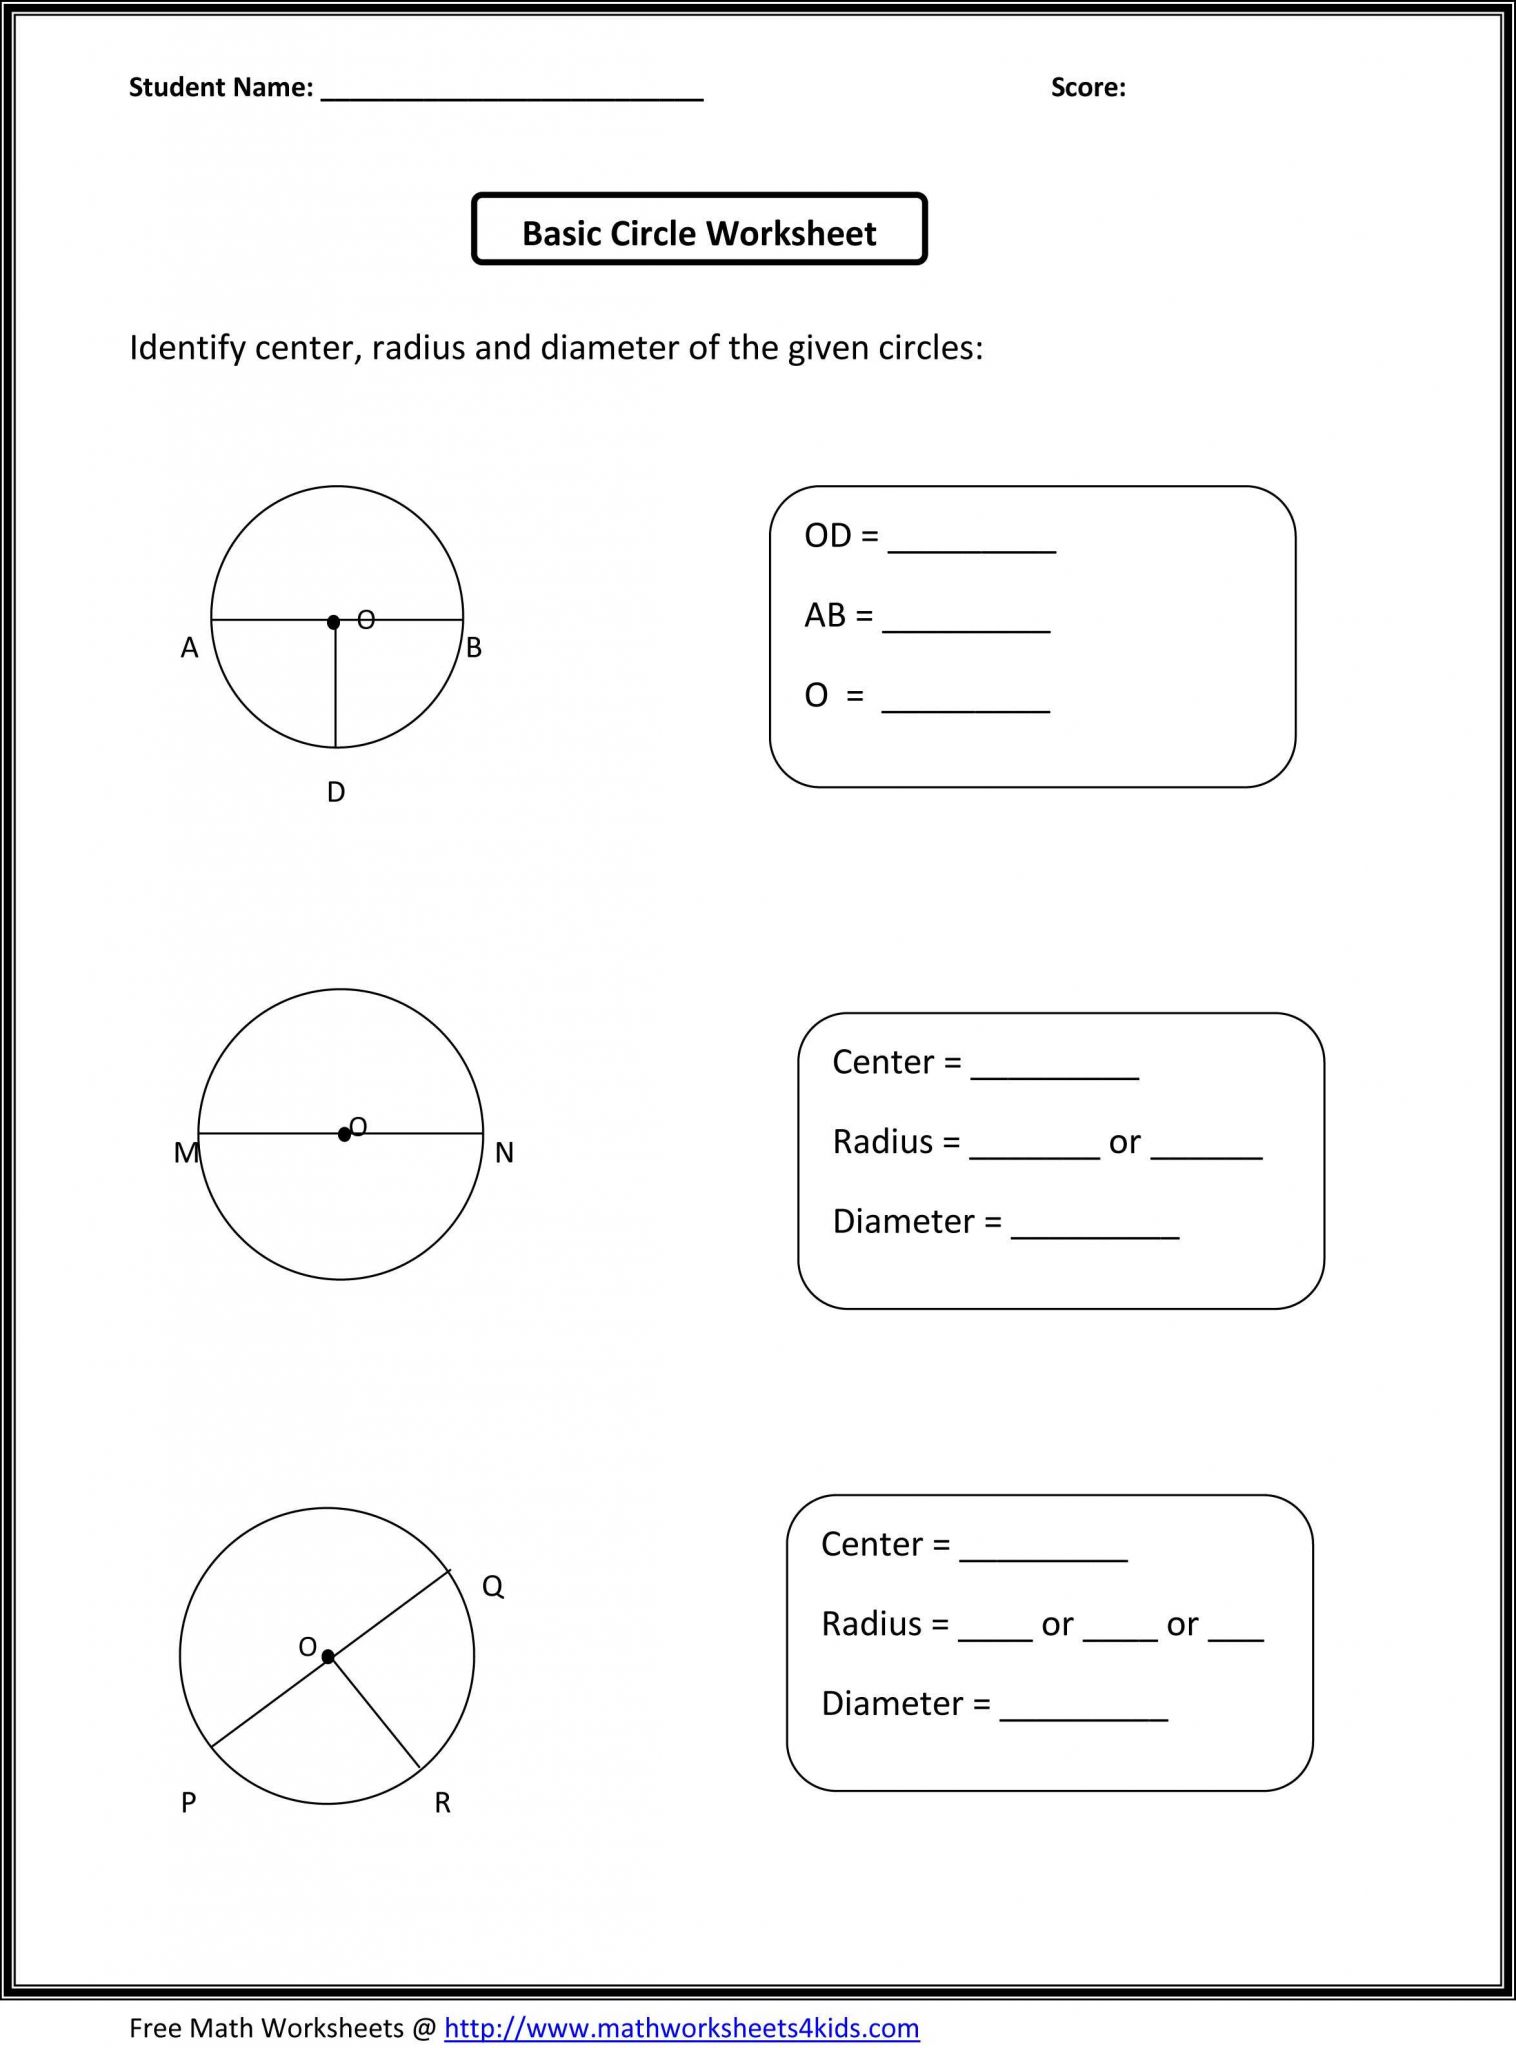 Aa Step 1 Worksheet as Well as Free Printable toddler Worksheets Beautiful ‡ocuk GeliÅ¸im Od Pike